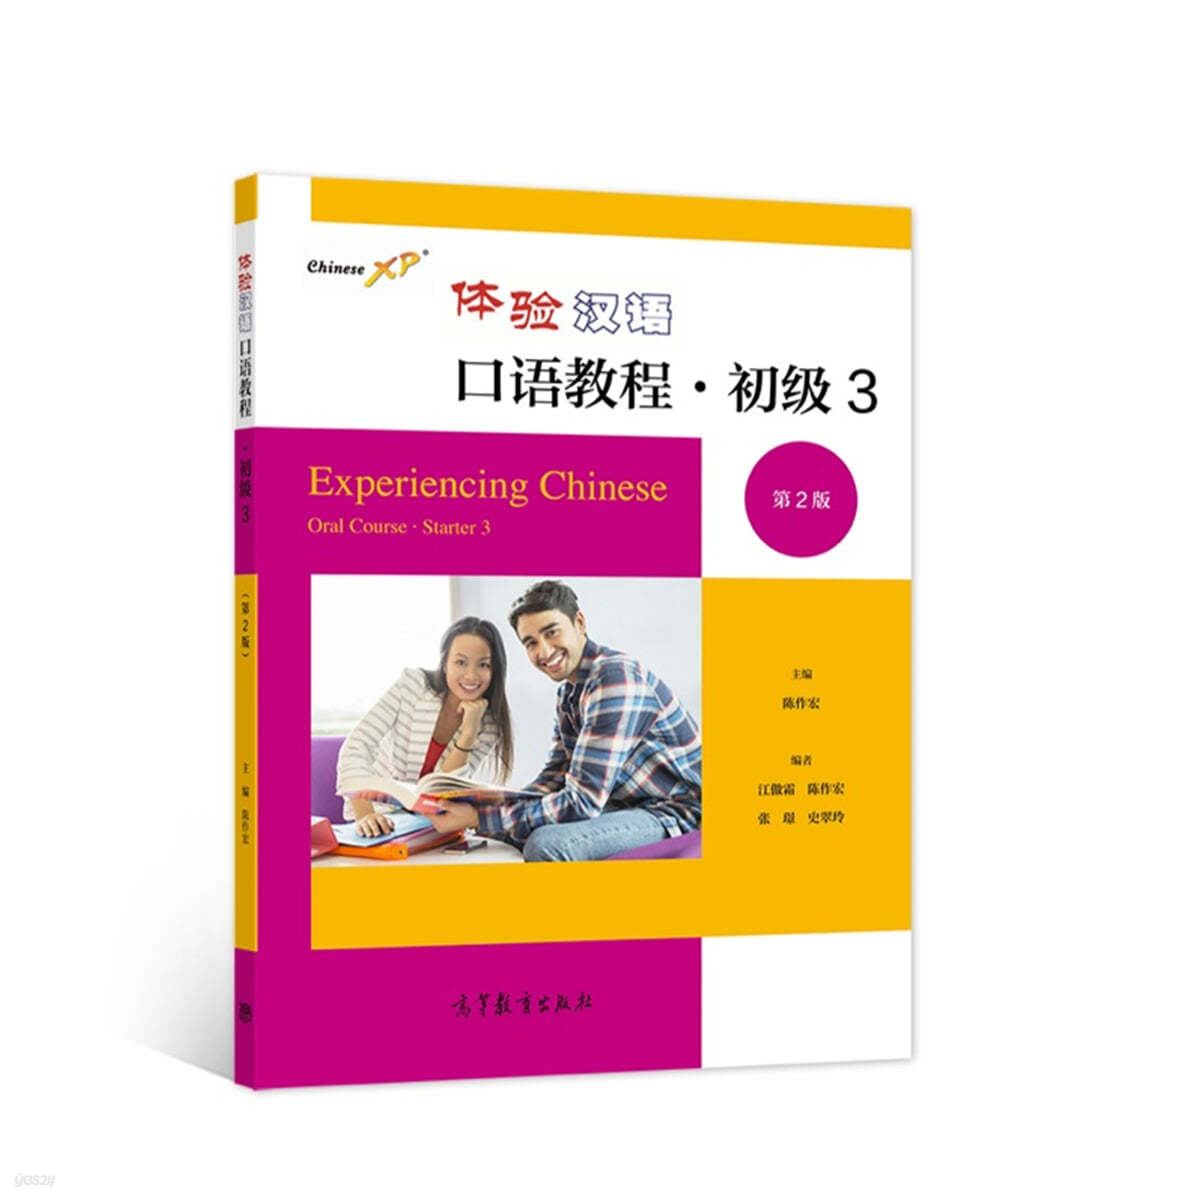 체험한어구어교정 초급3 (제2판 )體驗漢語口語?程 初級3（第2版）